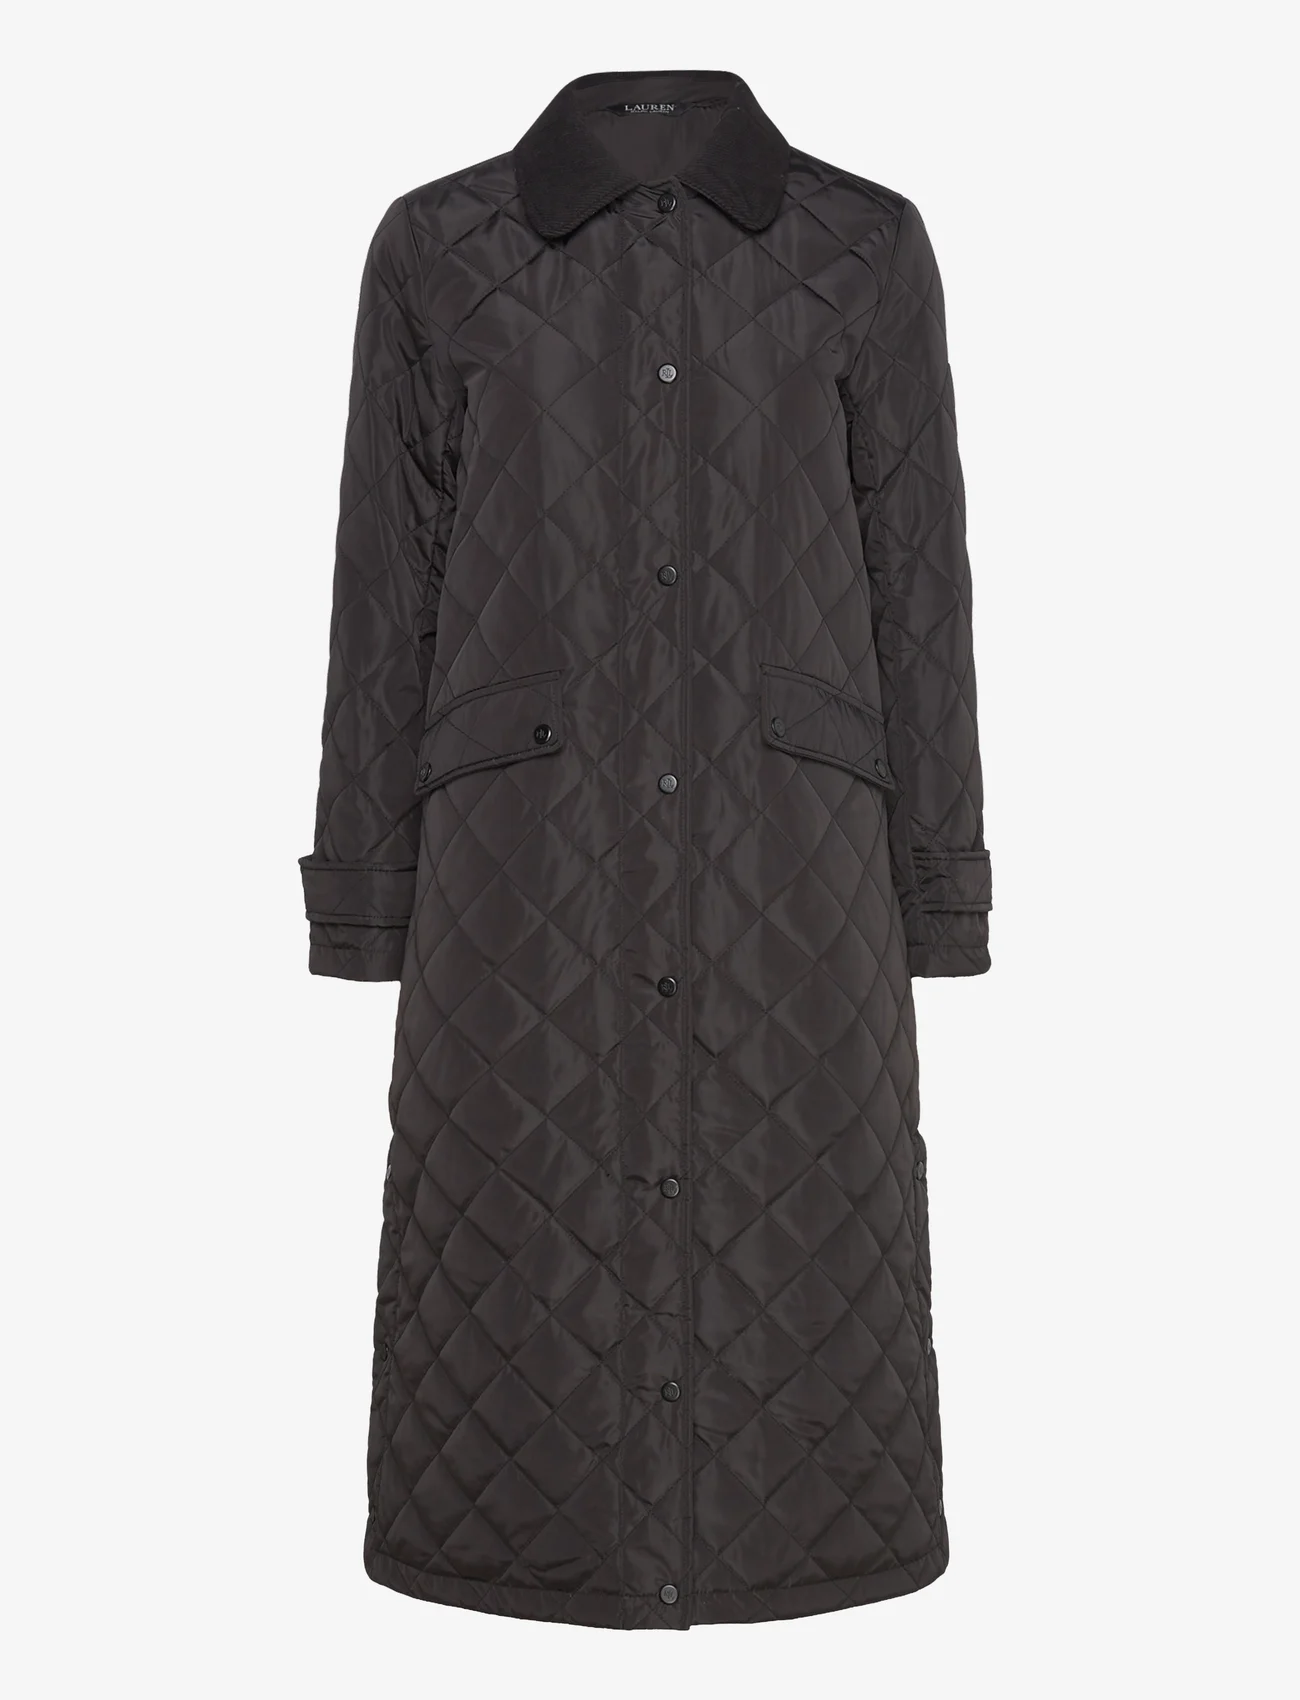 Lauren Ralph Lauren - Corduroy-Trim Diamond-Quilted Coat - quilted jackets - black - 0